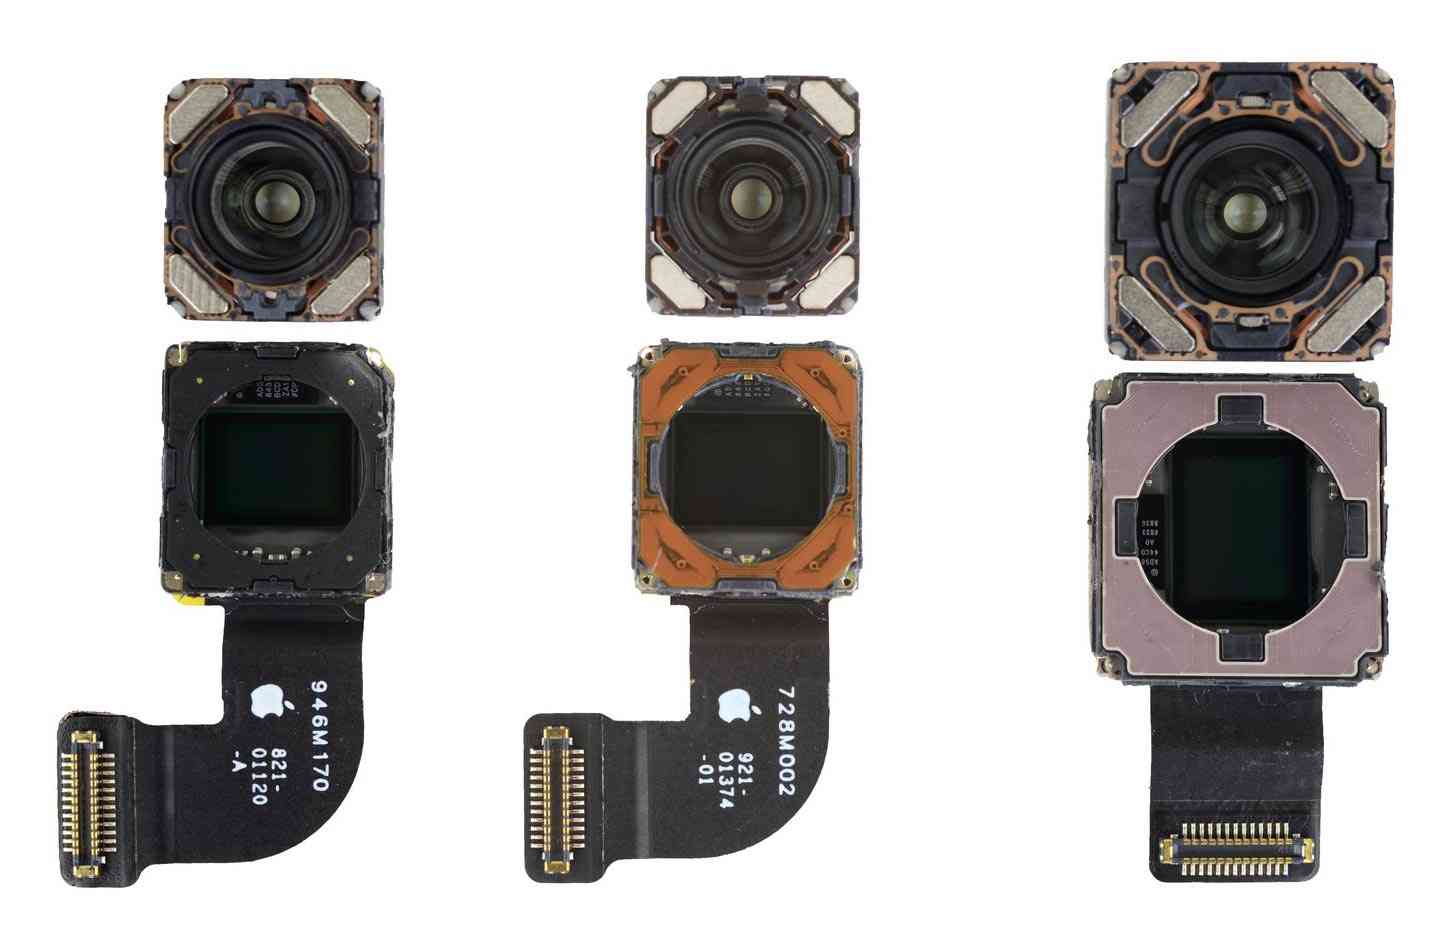 iPhone SE teardown camera comparison